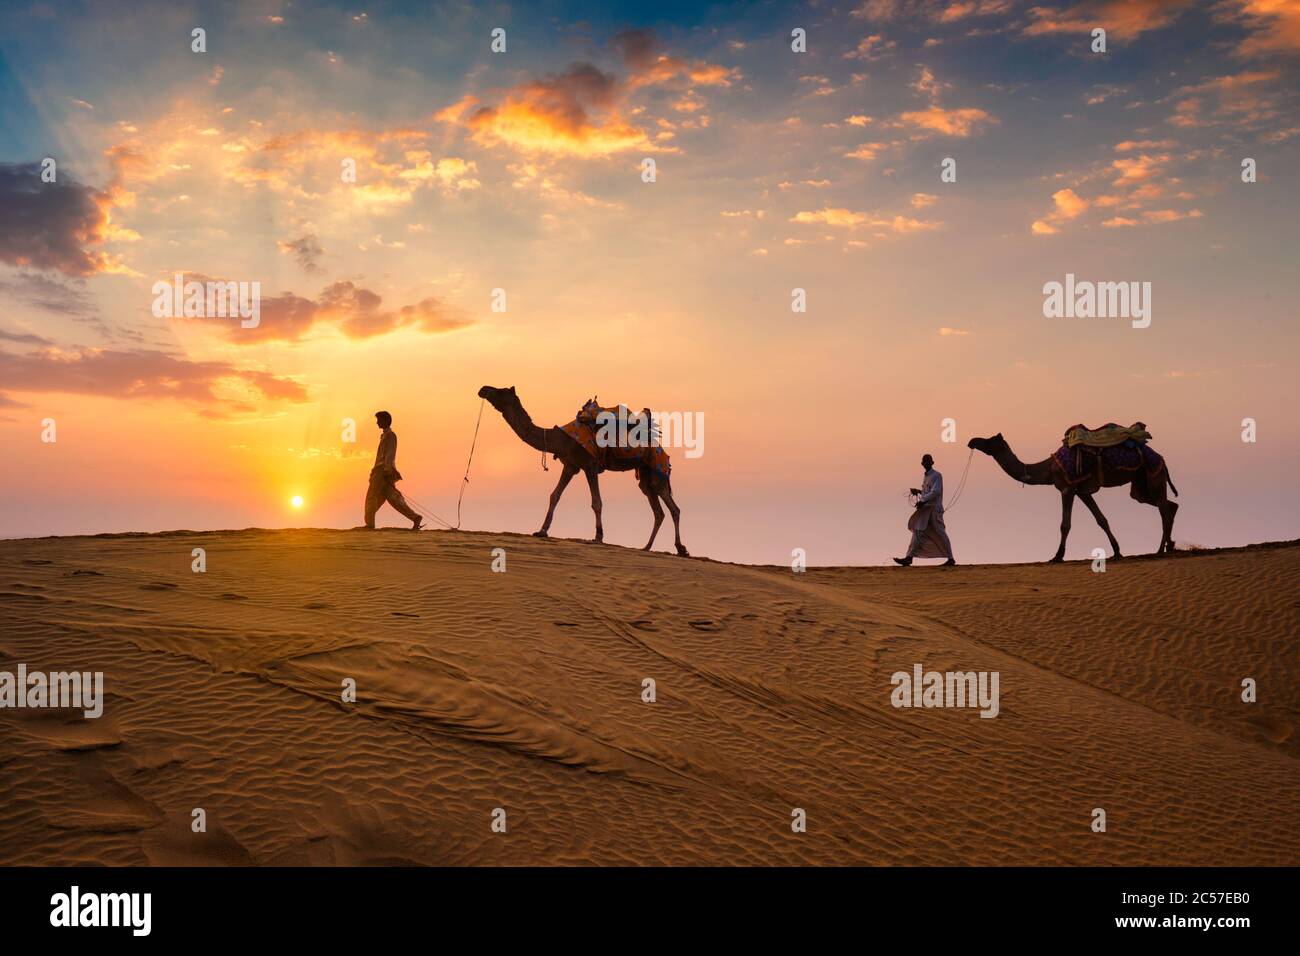 Caméléers indiens chauffeur de chameau avec silhouettes de chameau dans les dunes au coucher du soleil. Jaisalmer, Rajasthan, Inde Banque D'Images